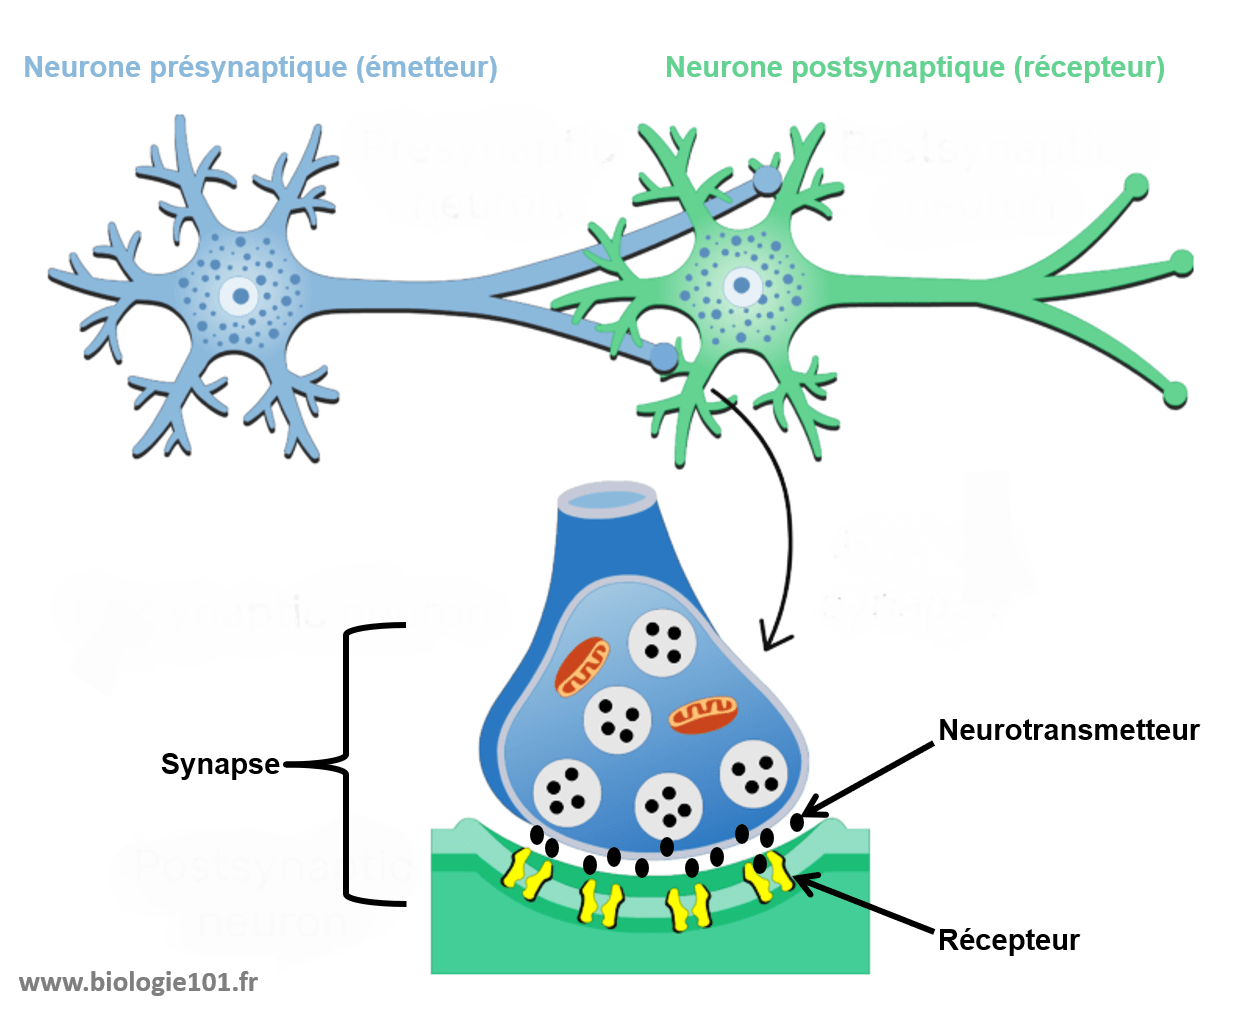 La synapse est la zone de contact entre deux neurones ou entre un neurone et une autre cellule. C'est là que le message nerveux électrique est converti en message chimique par l'intermédiaire des neurotransmetteurs.